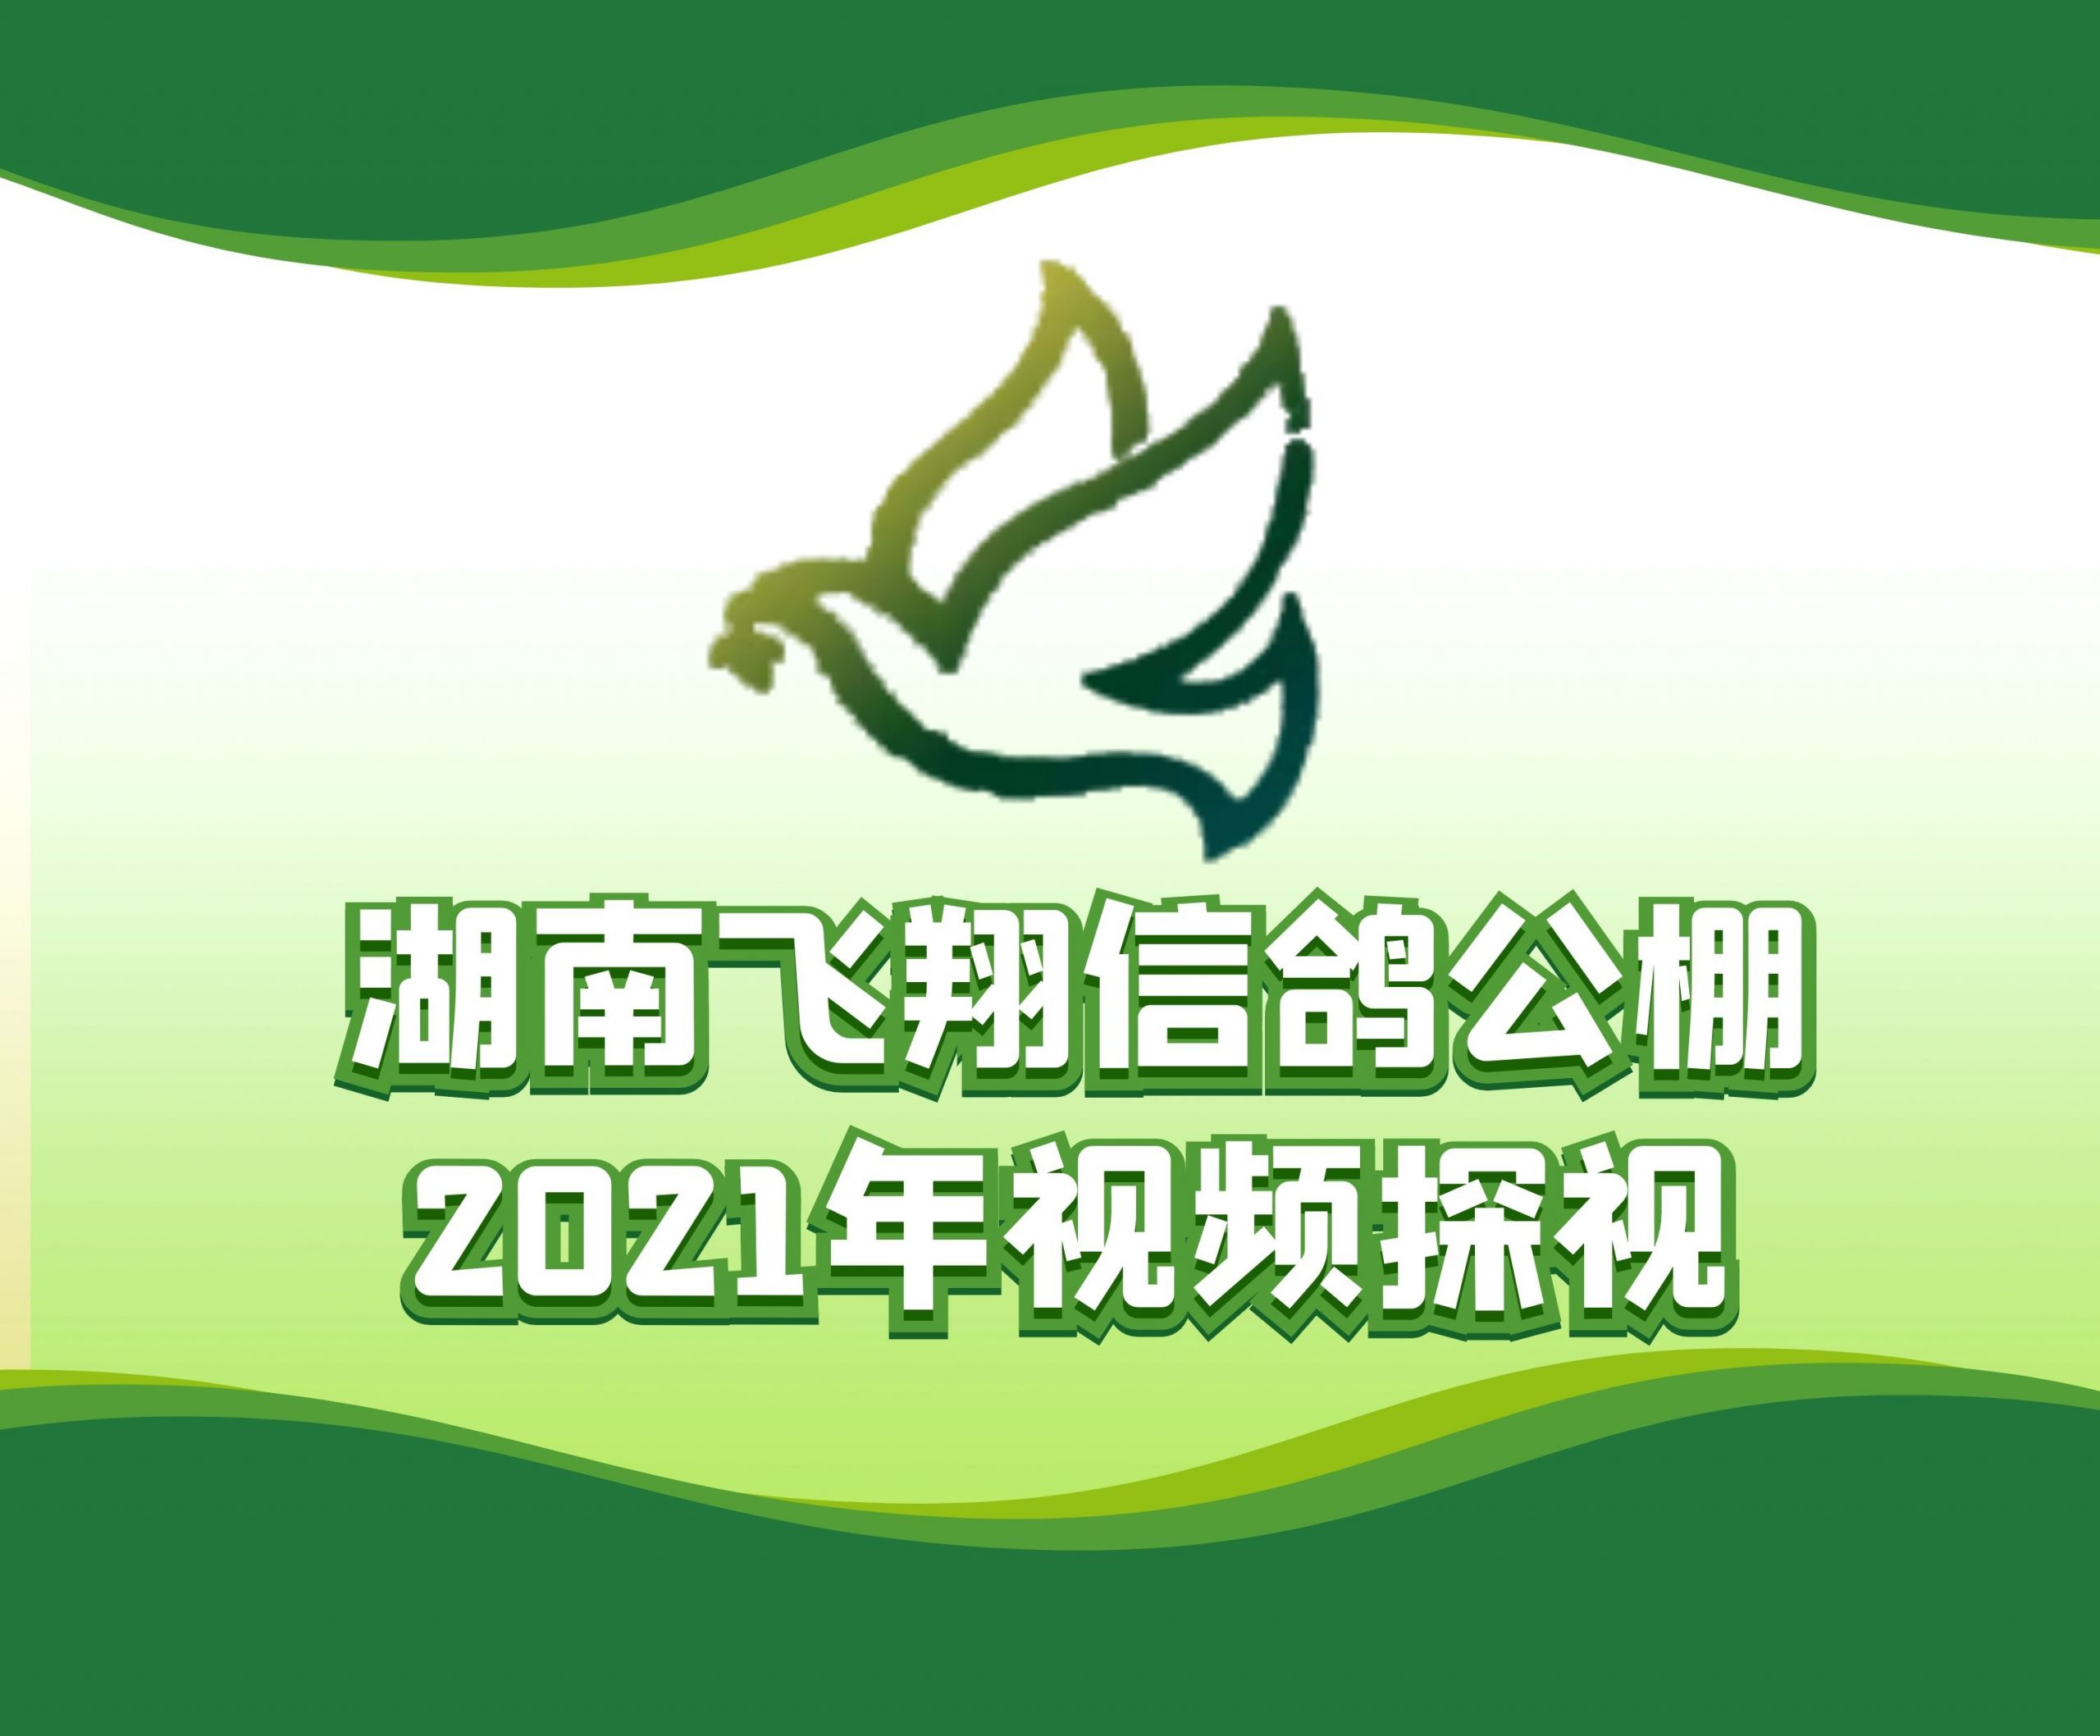 盛辉特-吴石鸽-2021-14-0126146